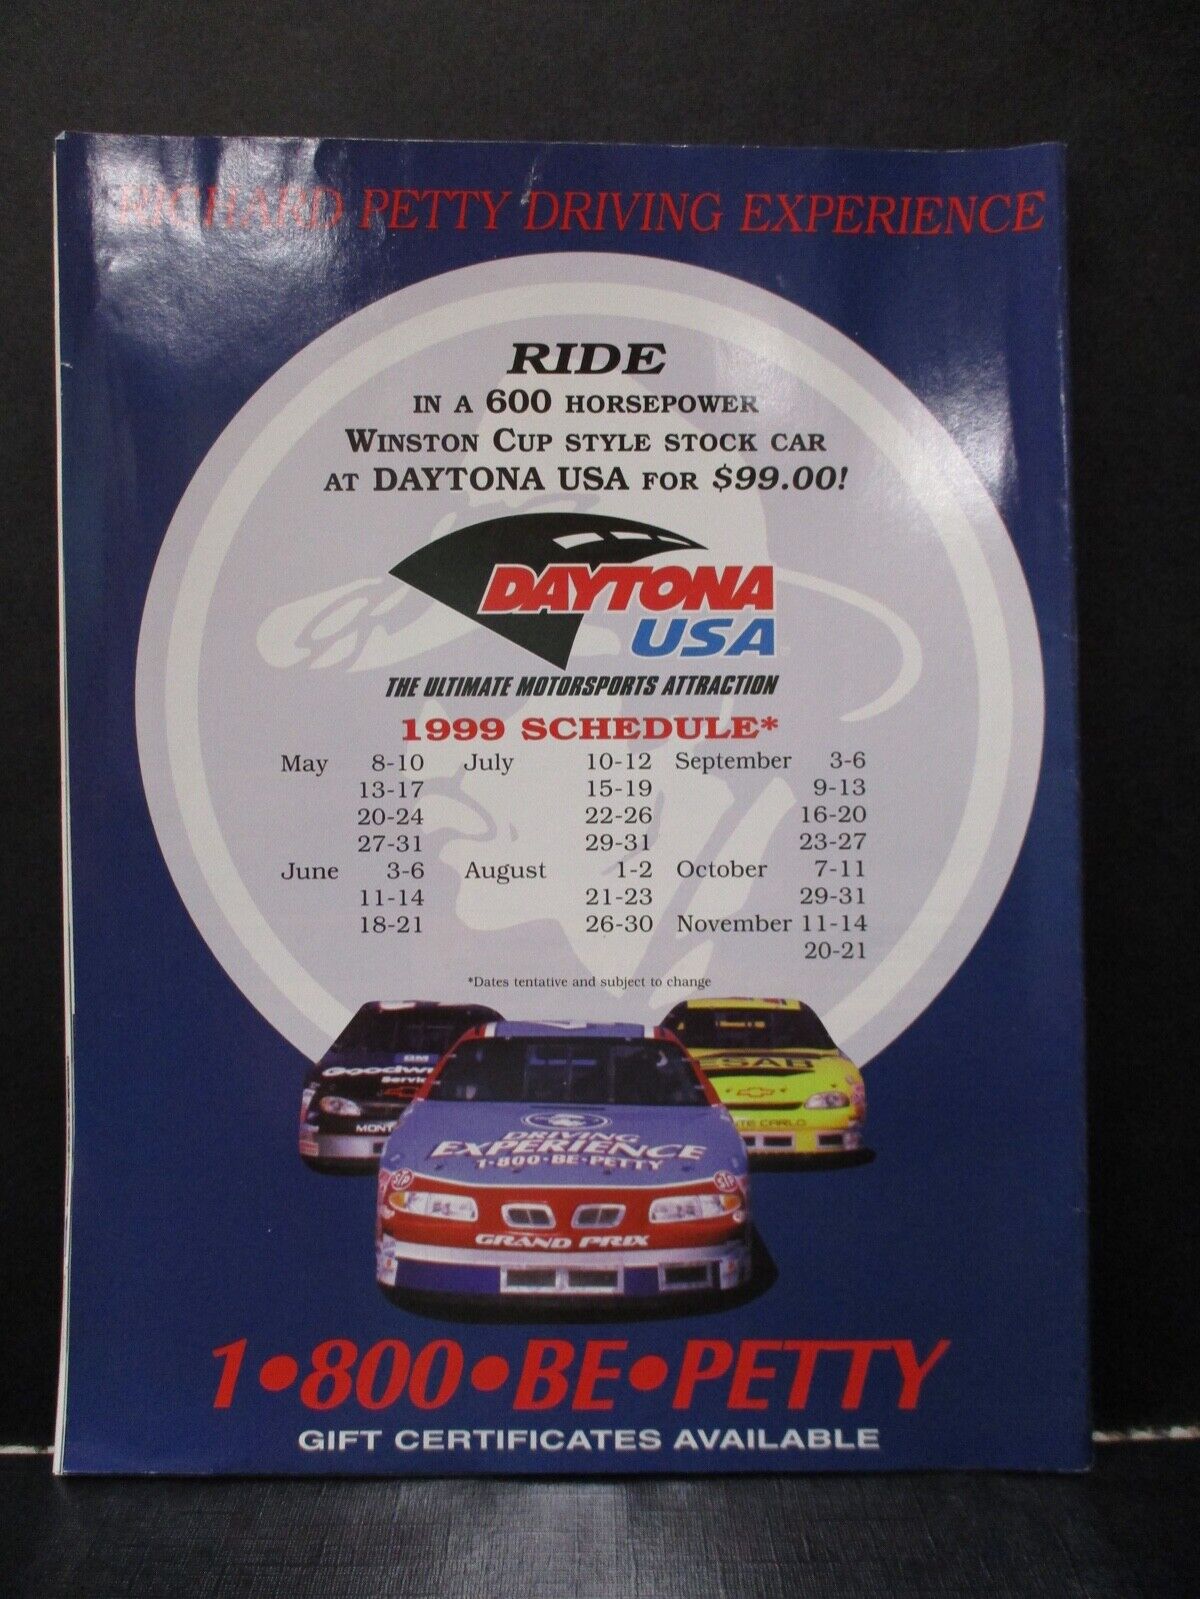 Nascar Daytona 500 1999 Summer Daytona Pit Stops Vintage Magazine EX Condition